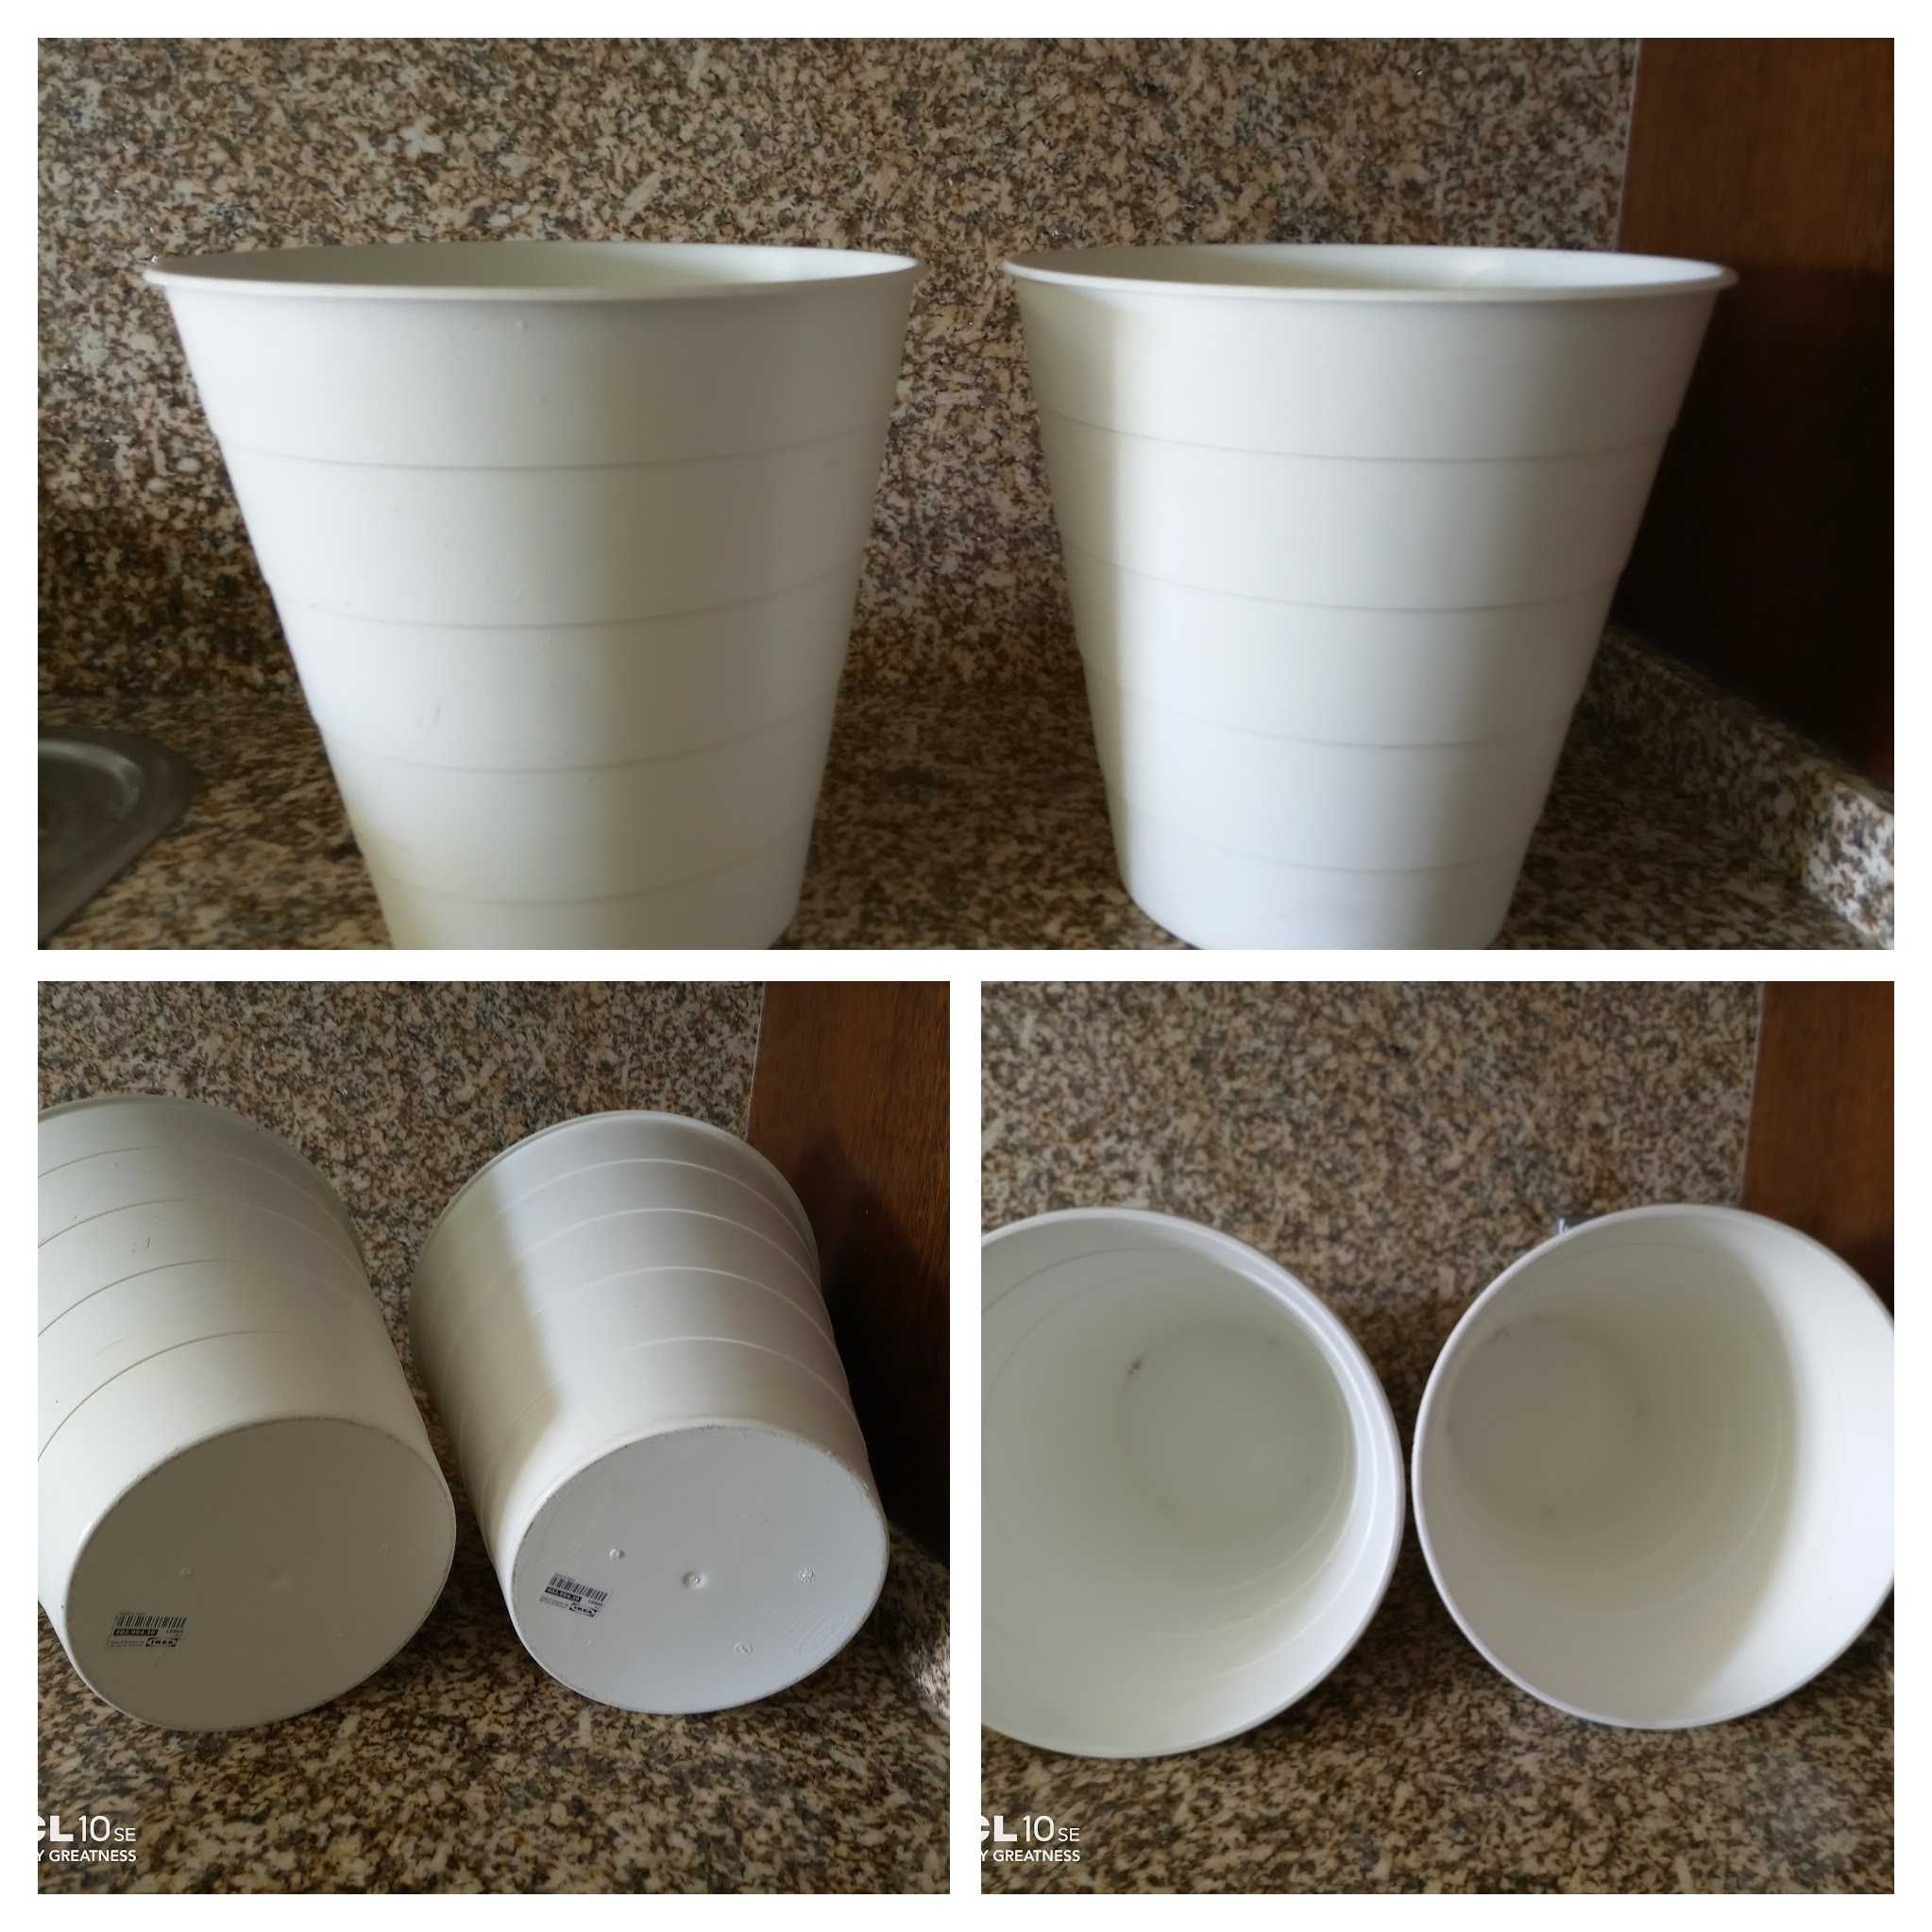 Vários vasos com diferentes modelos e tamanhos